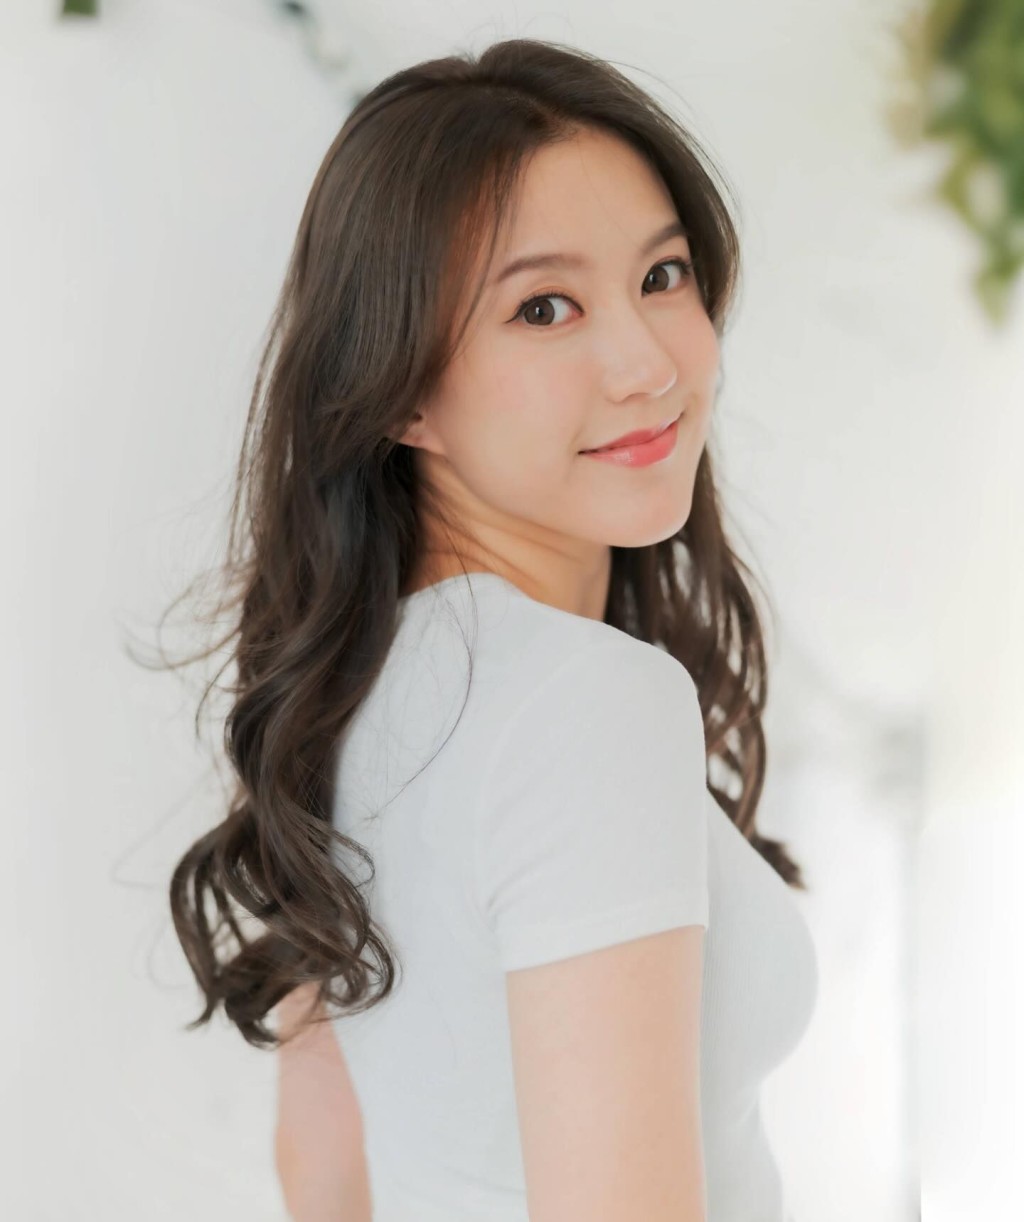 罗雪妍入行前任职平面模特儿。